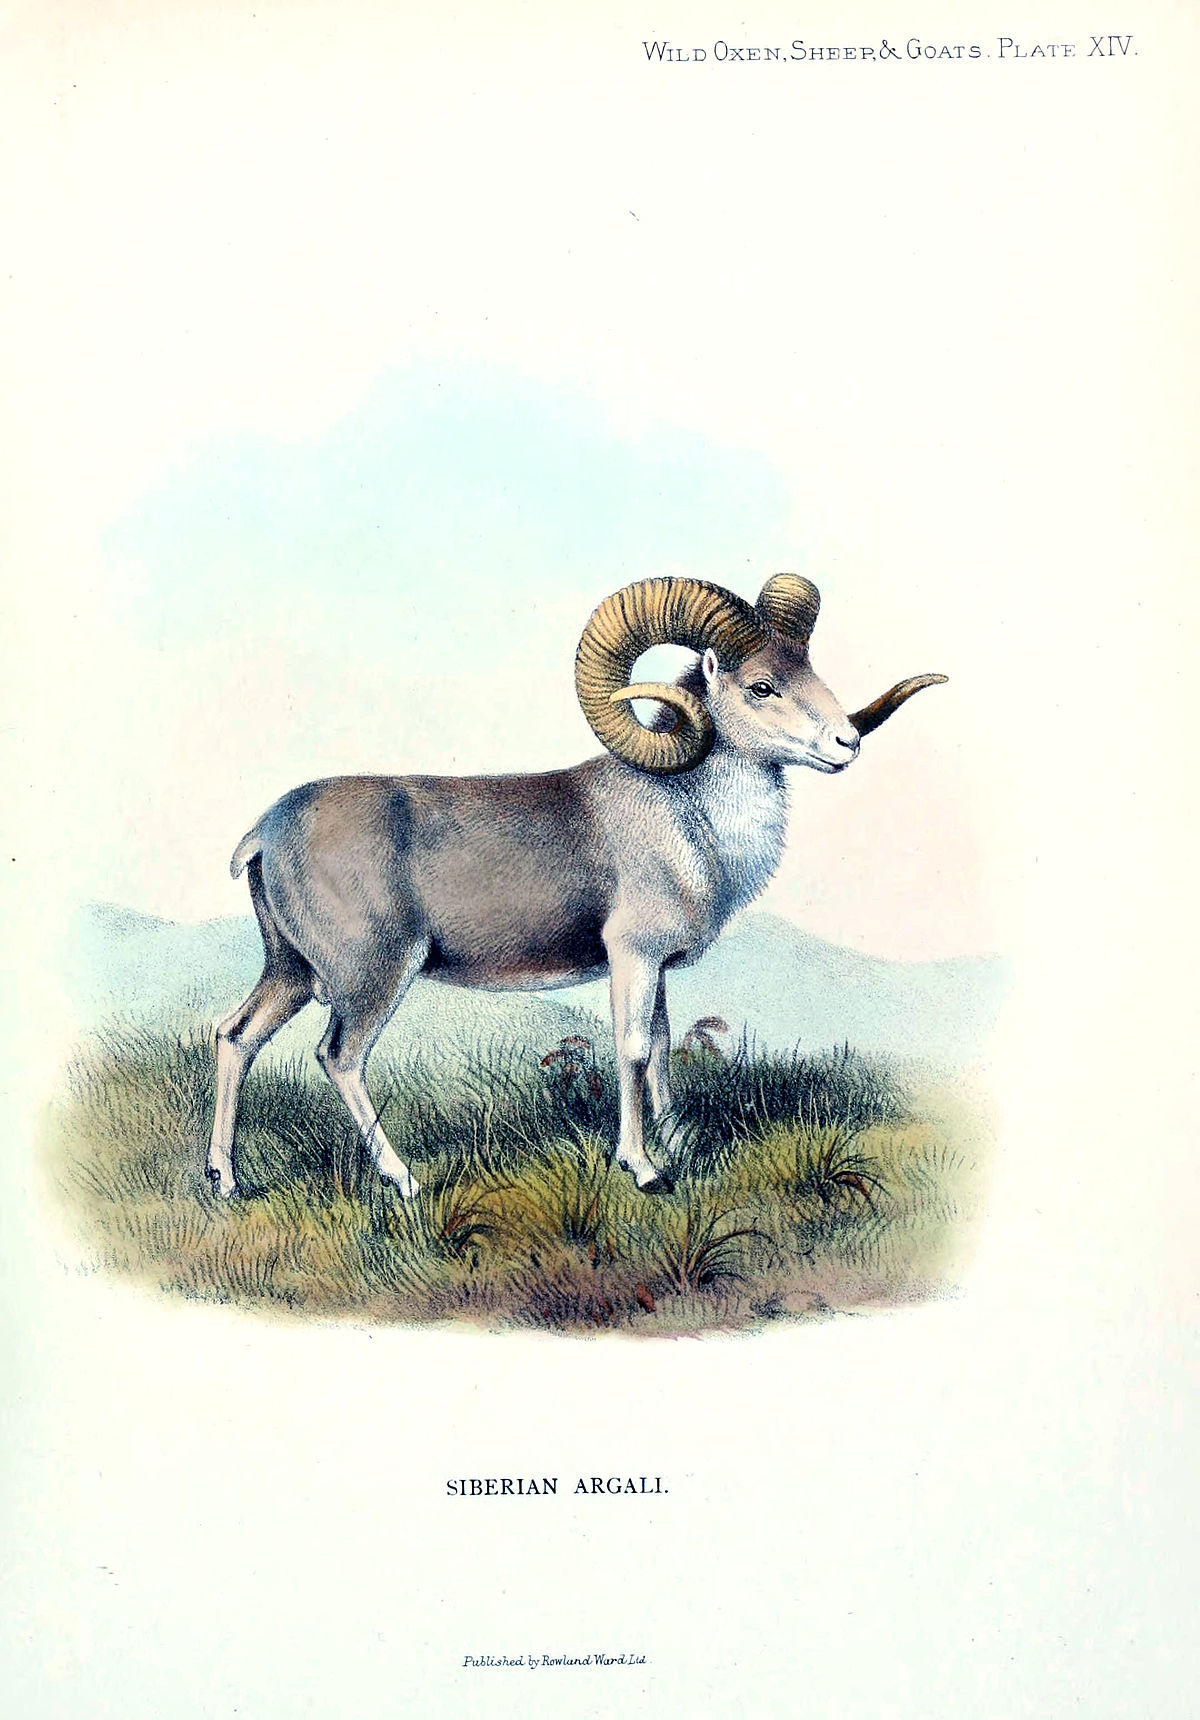 Dzikie owce: charakterystyka i rodzaje parzystokopytnych ze skręconymi rogami